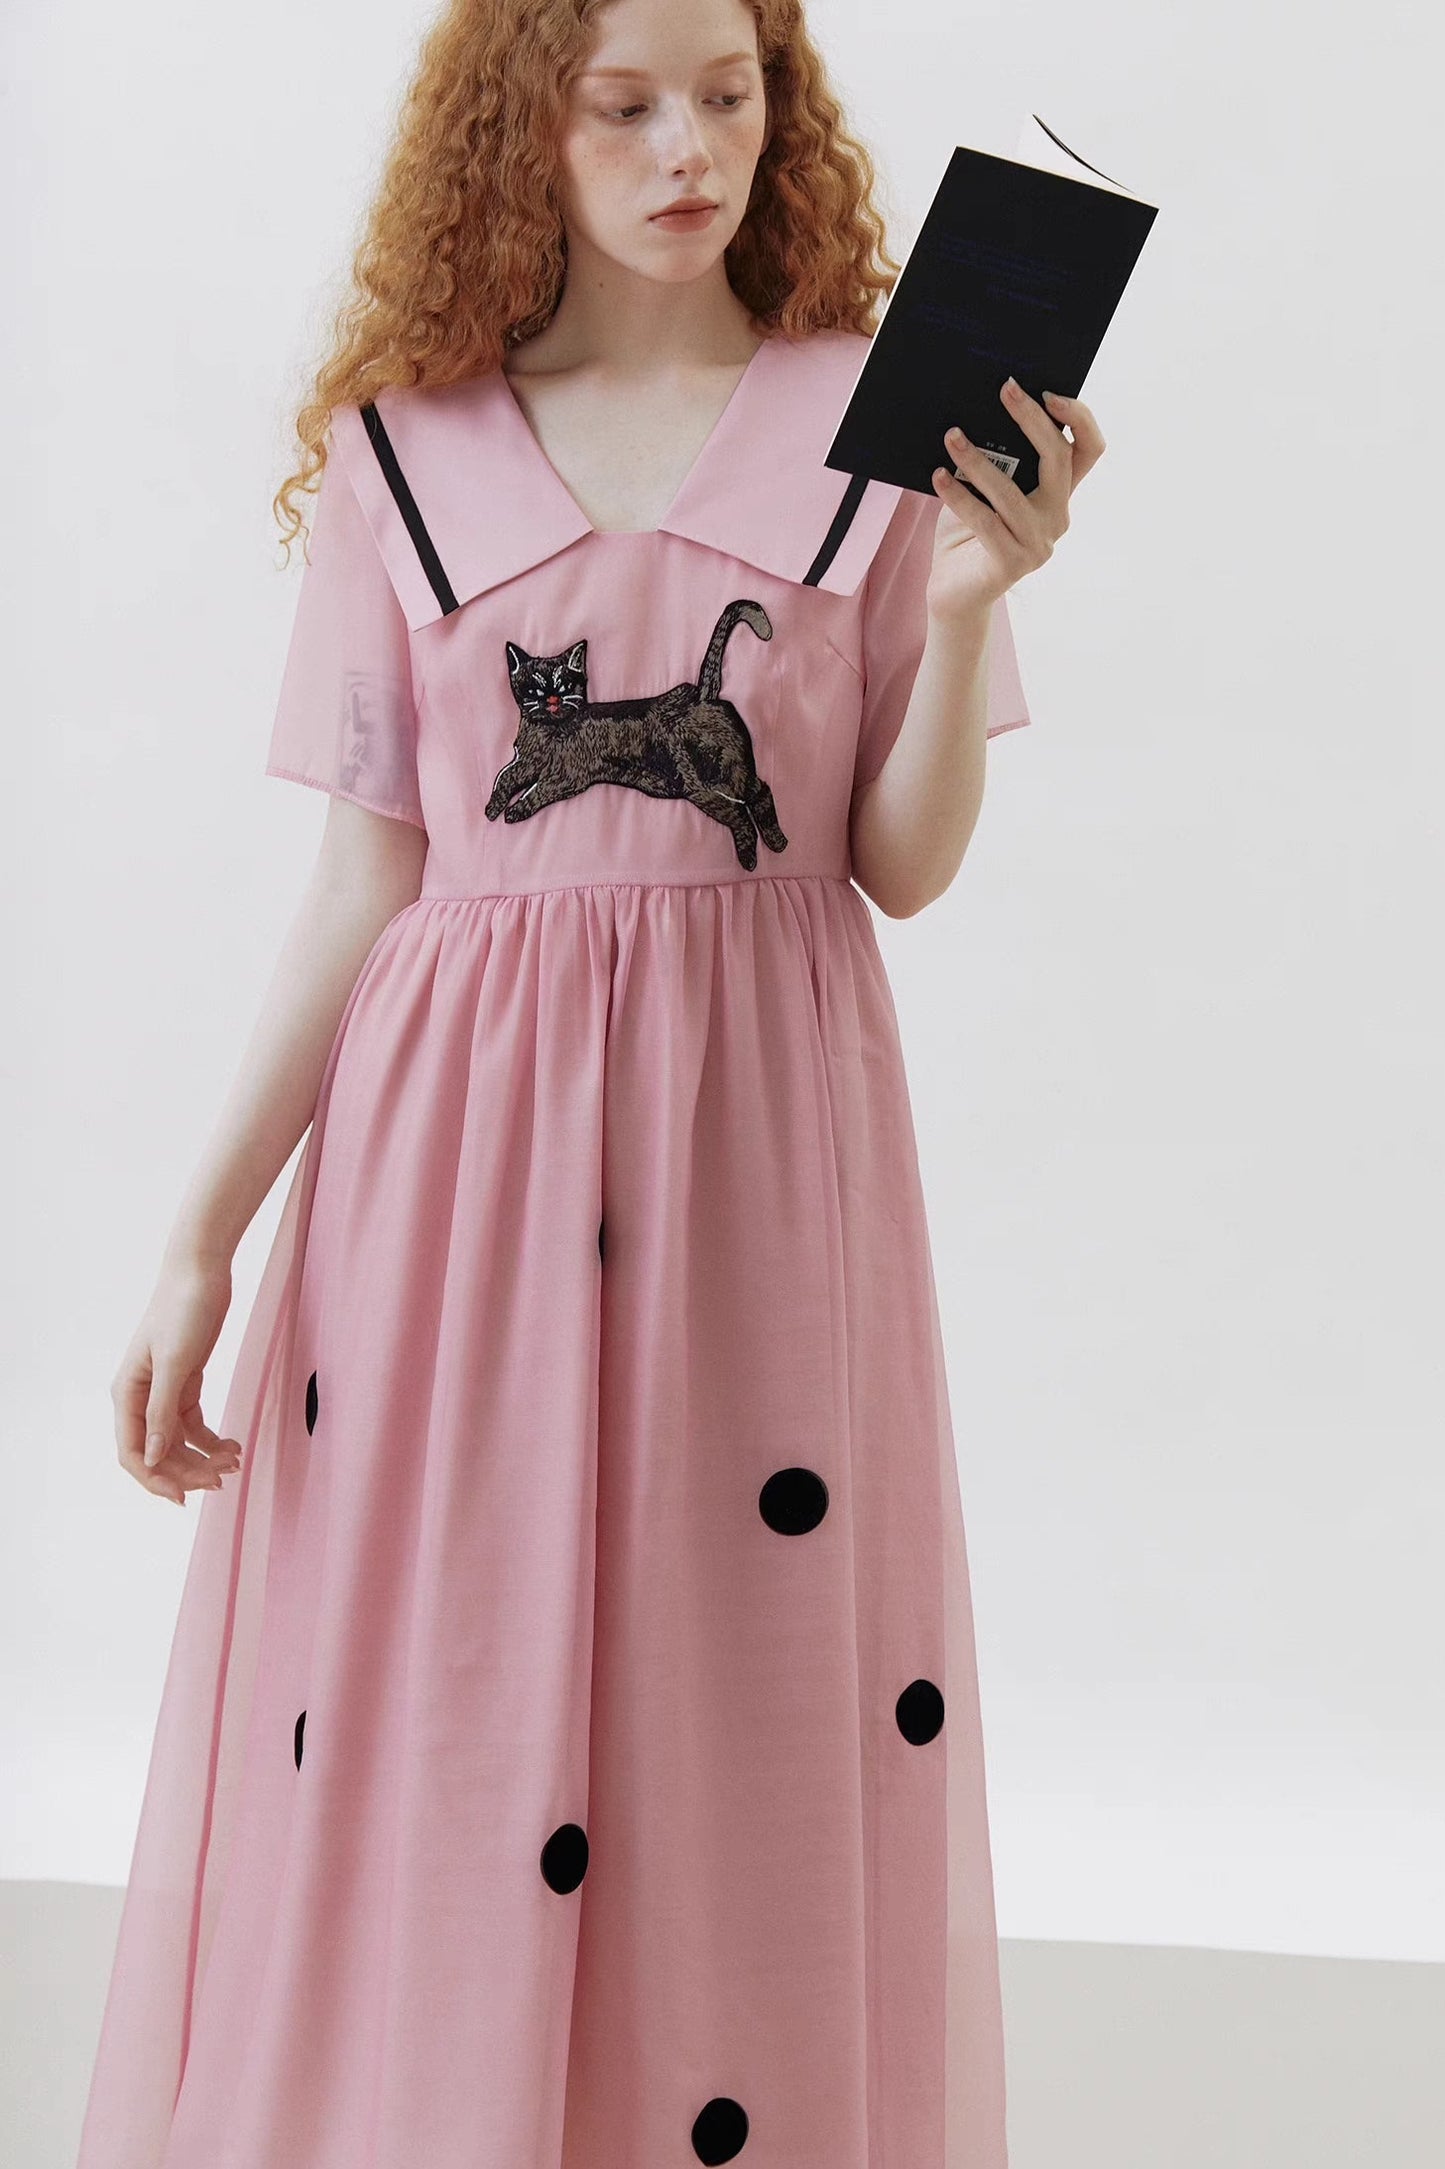 original cat polka dot preppy lapel dress